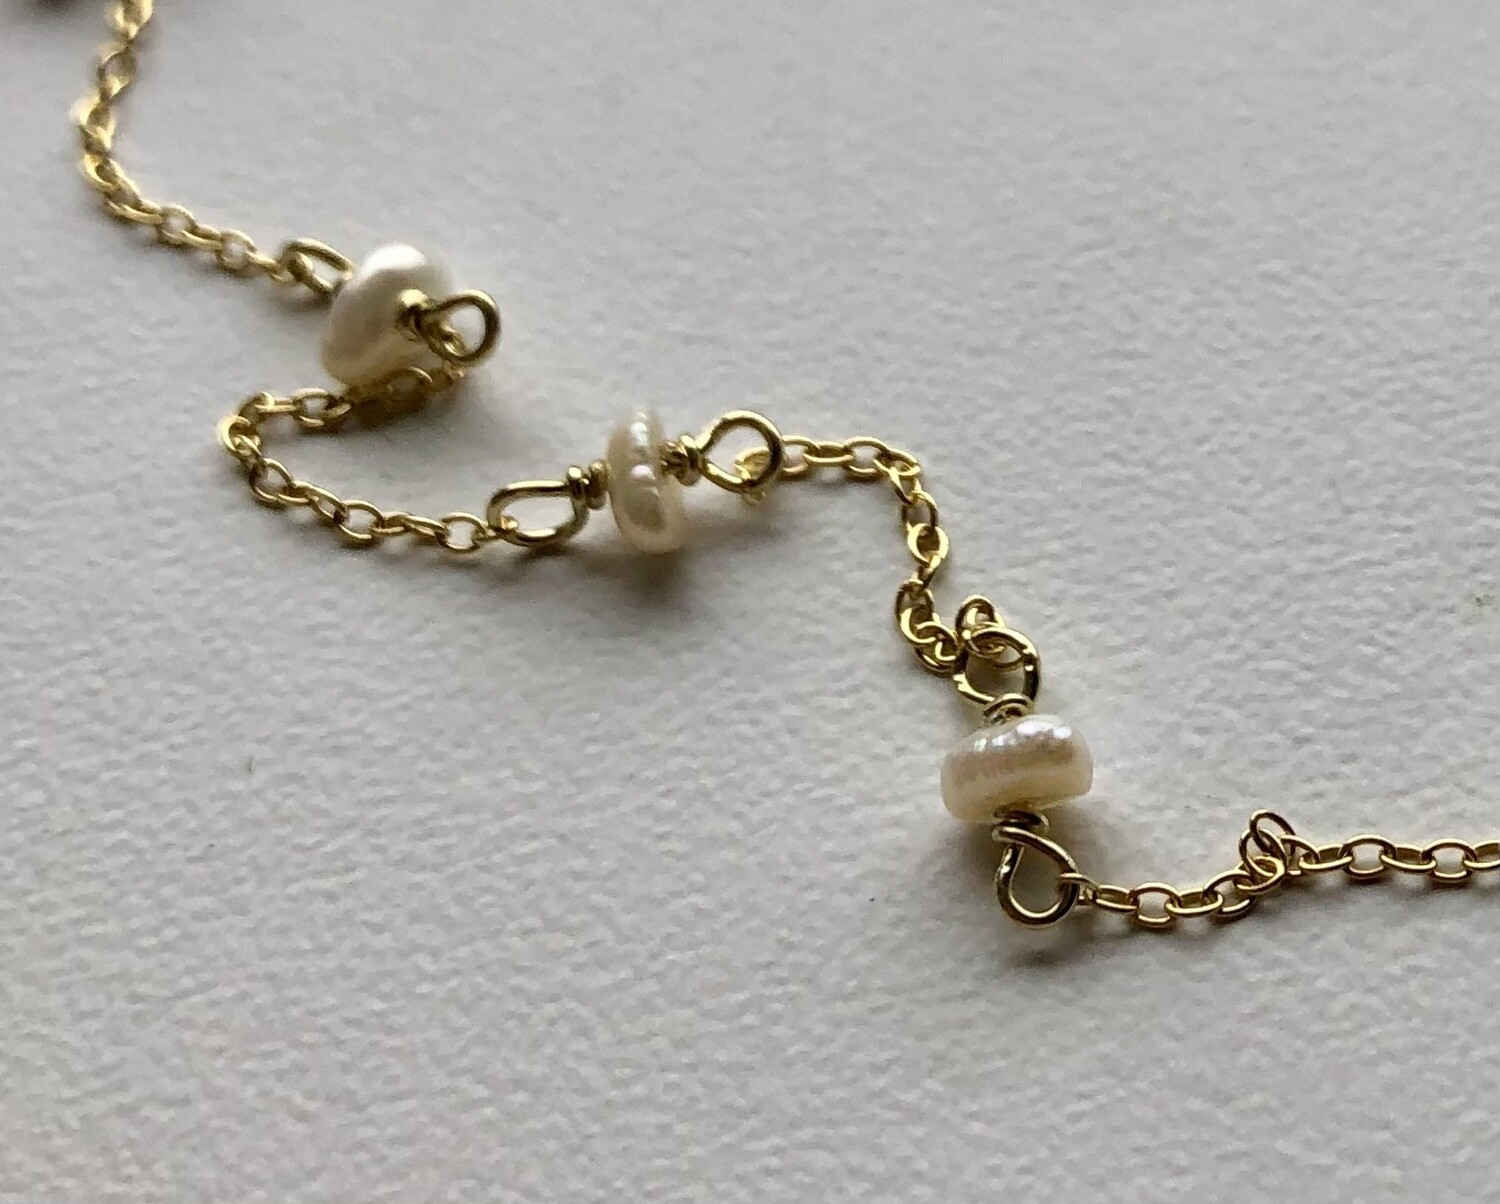 Materialesæt til kædestykker med perler imellem Fra